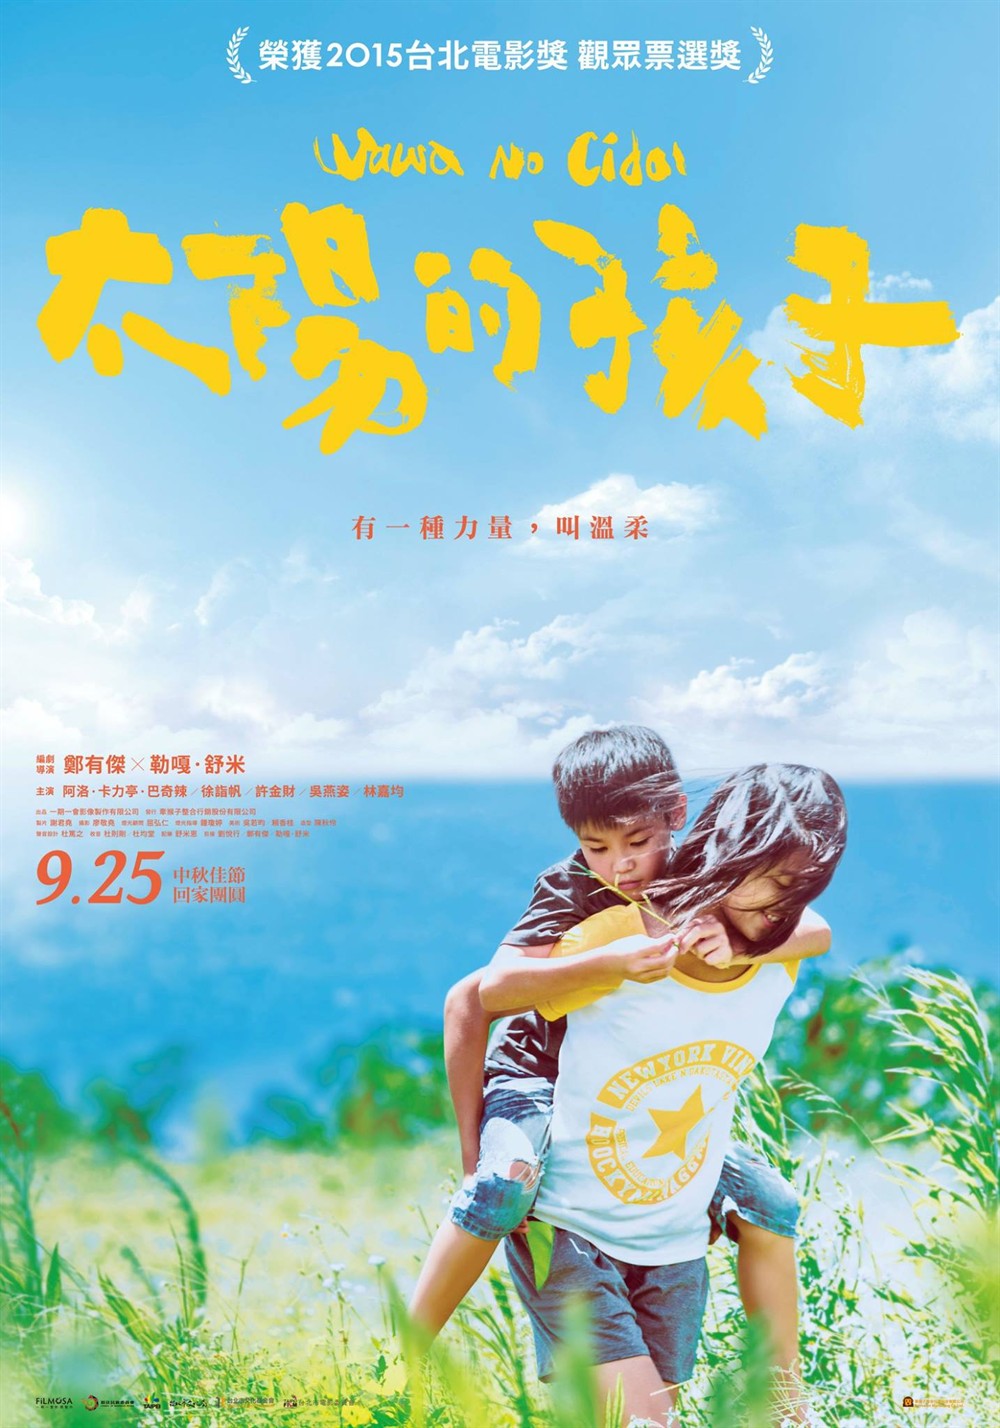 2016最新电影《太阳的孩子》国产剧情片BD国语中字